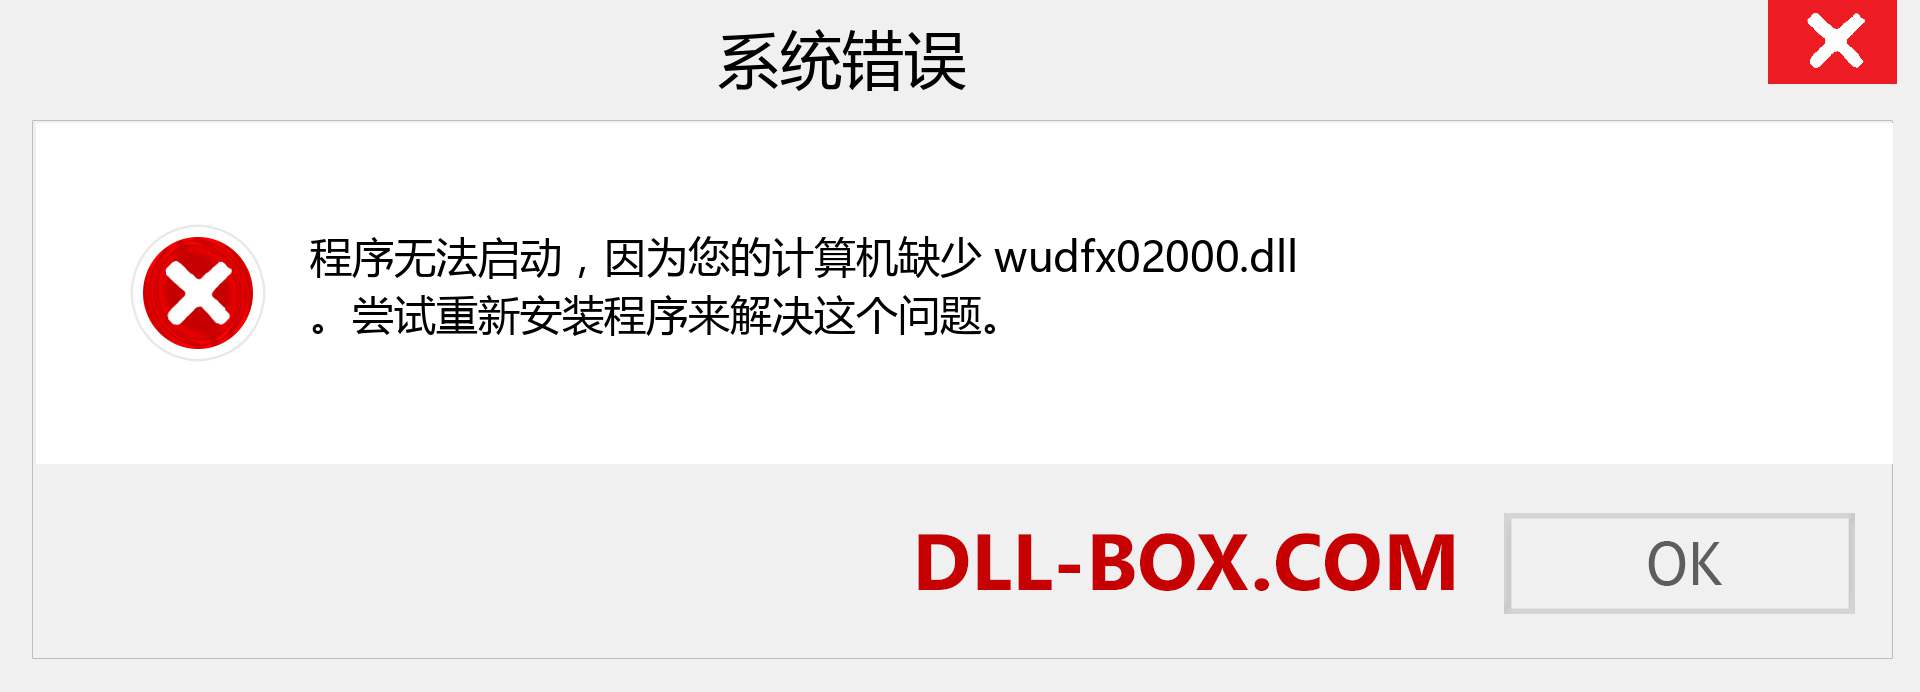 wudfx02000.dll 文件丢失？。 适用于 Windows 7、8、10 的下载 - 修复 Windows、照片、图像上的 wudfx02000 dll 丢失错误